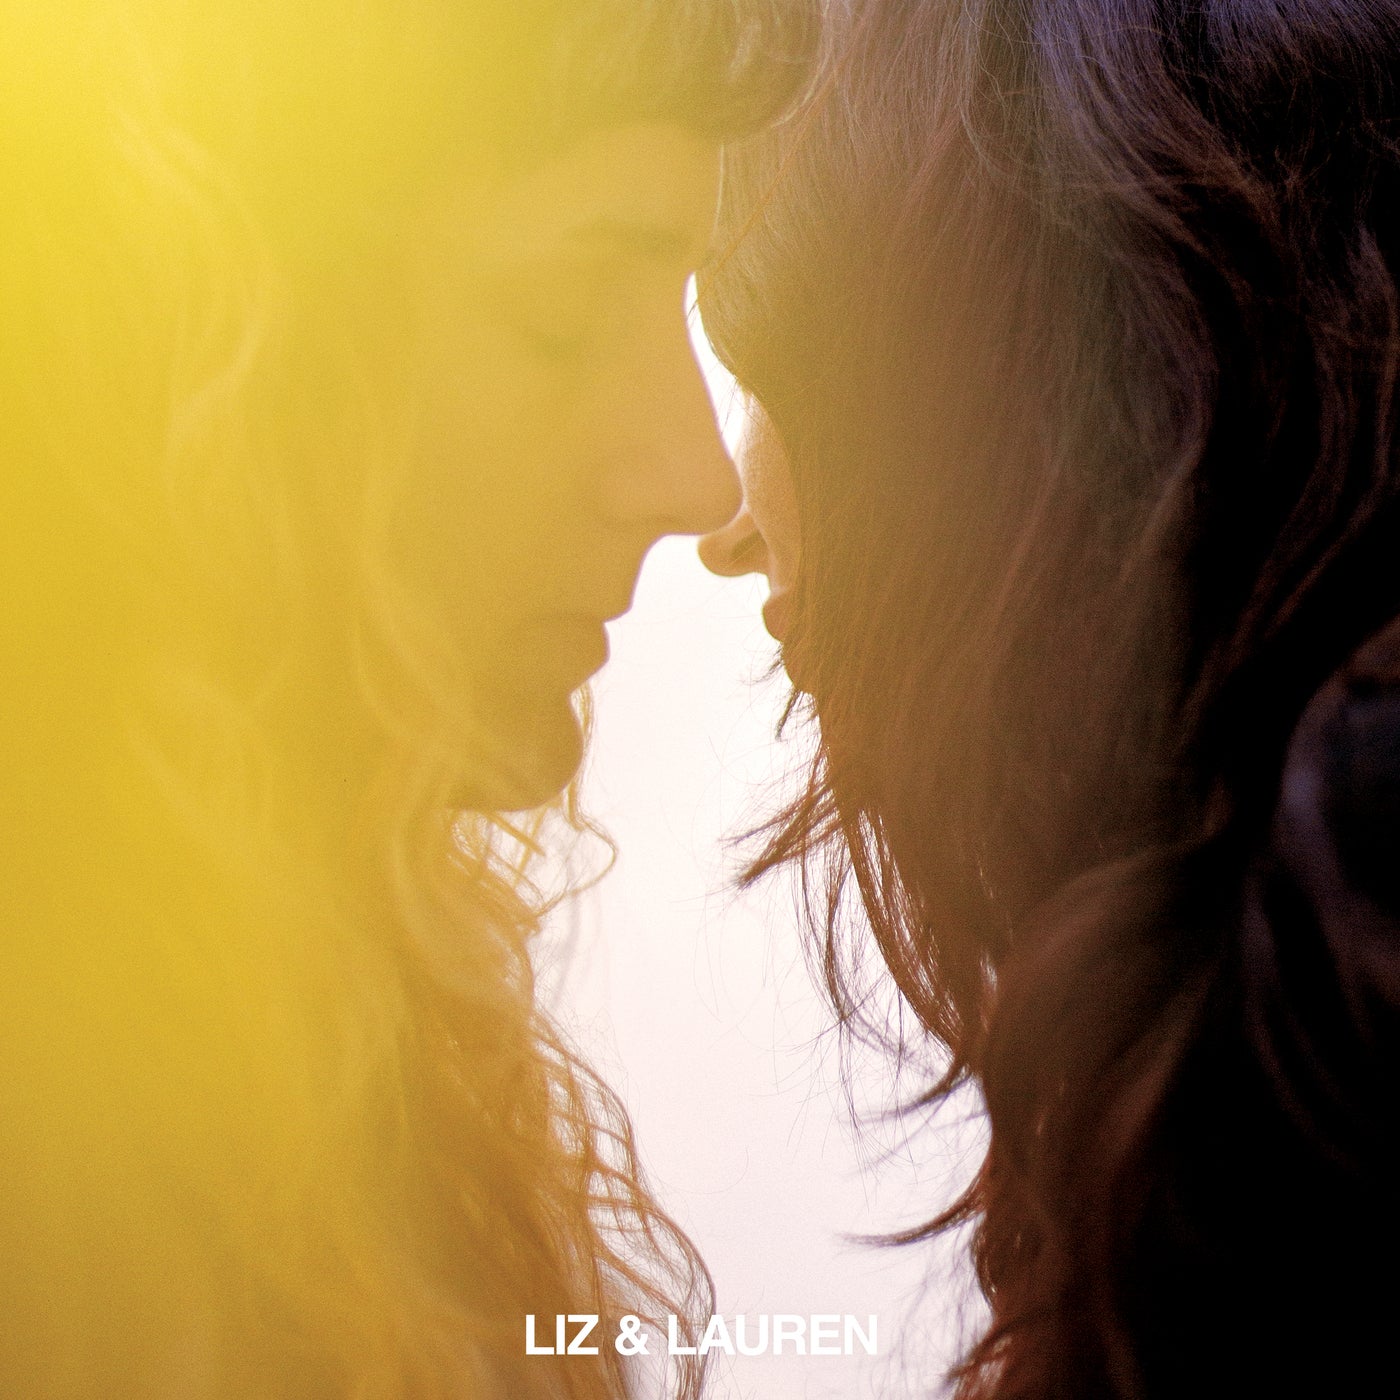 Liz & Lauren EP